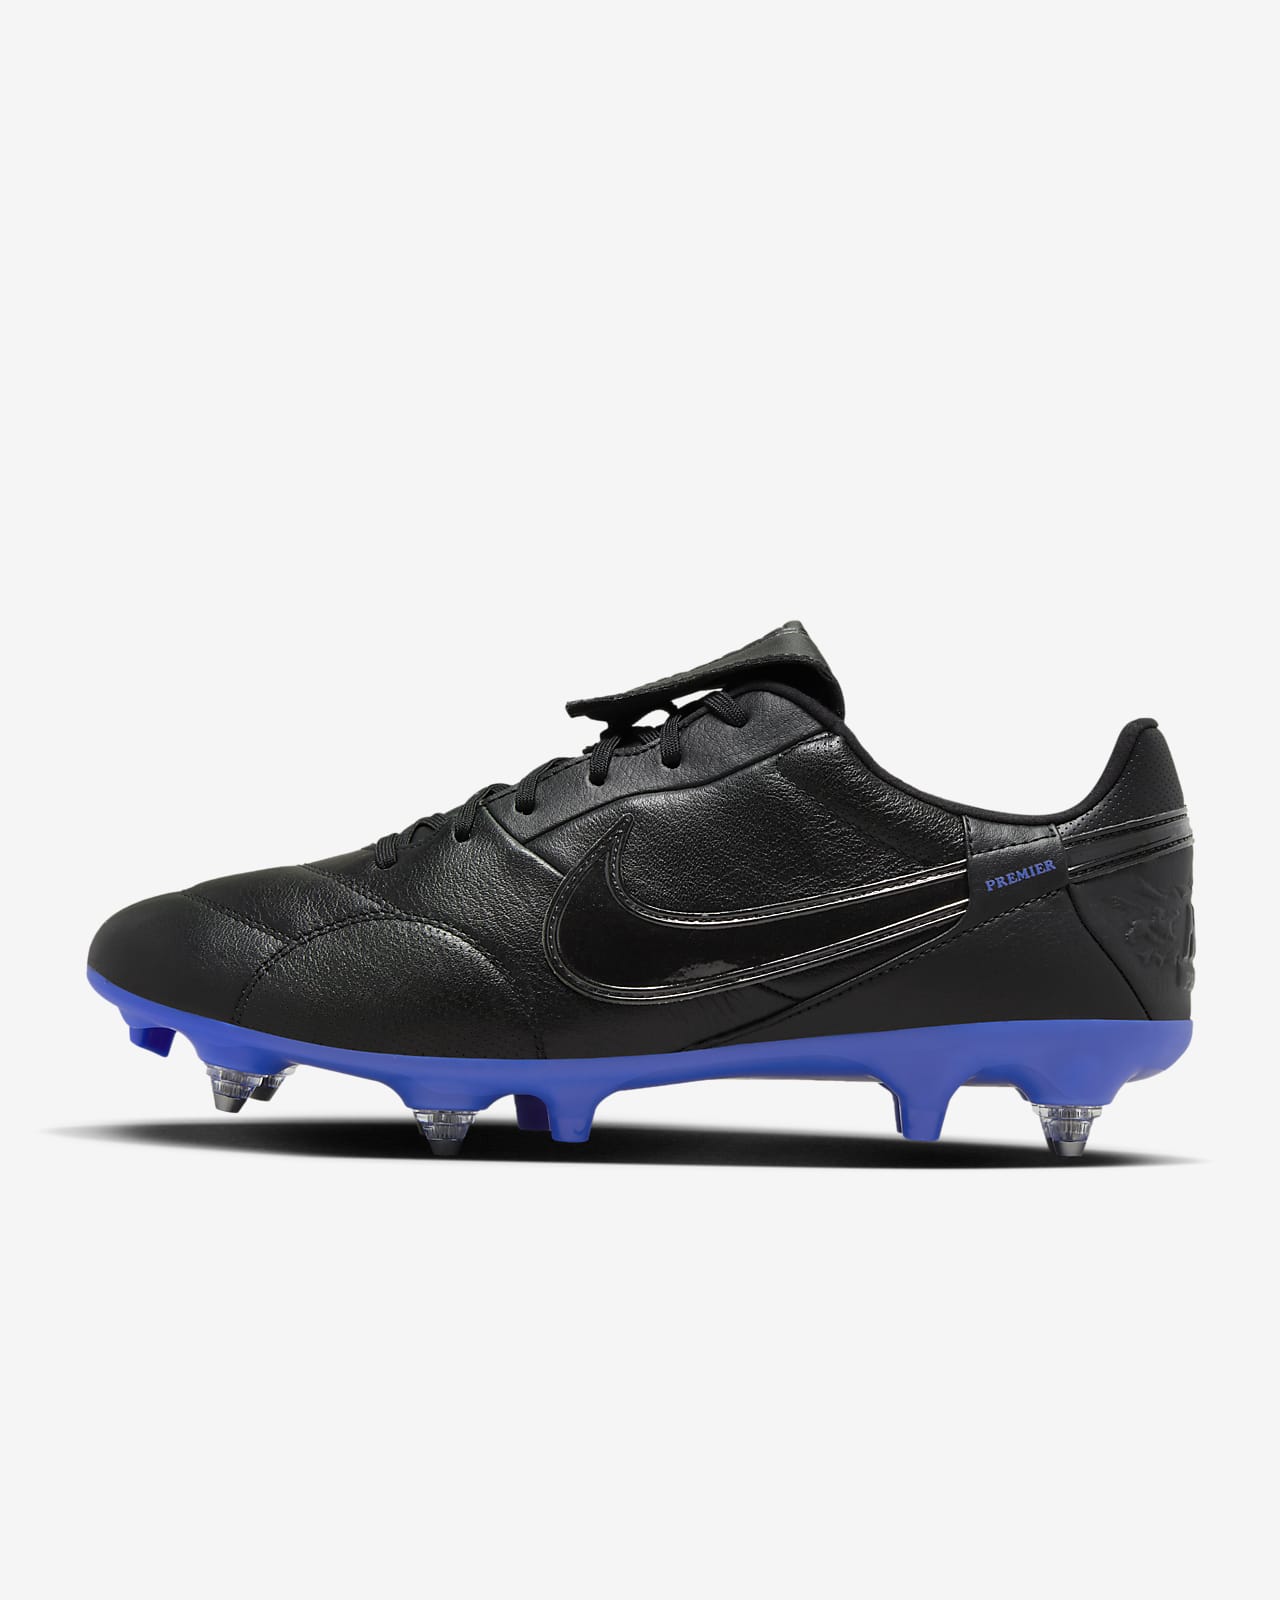 NikePremier 3-fodboldstøvler (low-top) til blødt underlag